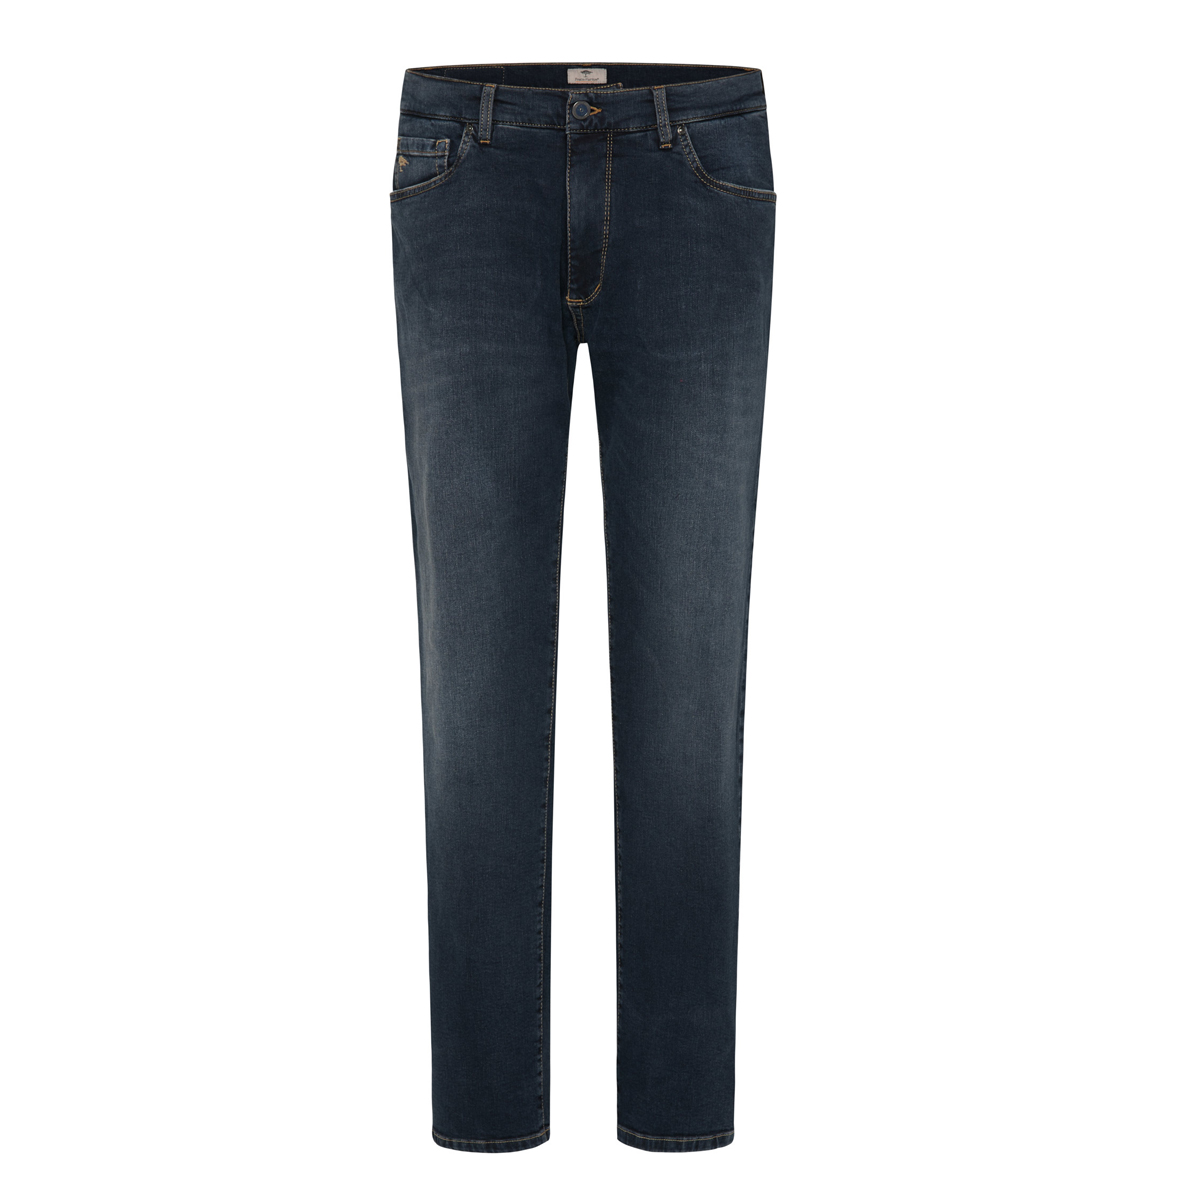 Fynch Hatton Jeans Durkins Menswear Longford - Durkins